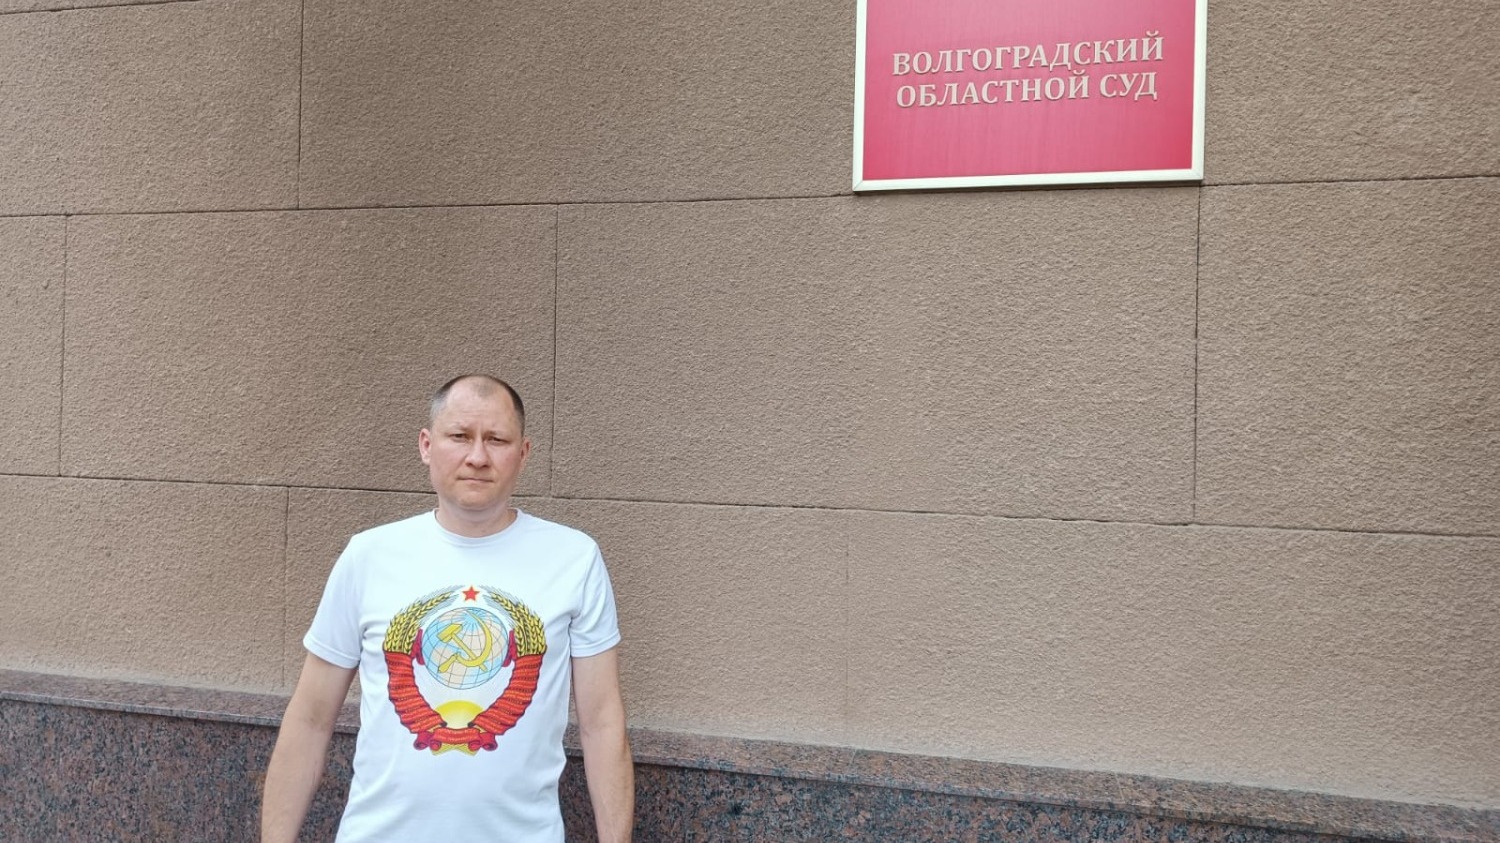 Алексей Севастьянов остался разочарован решением суда